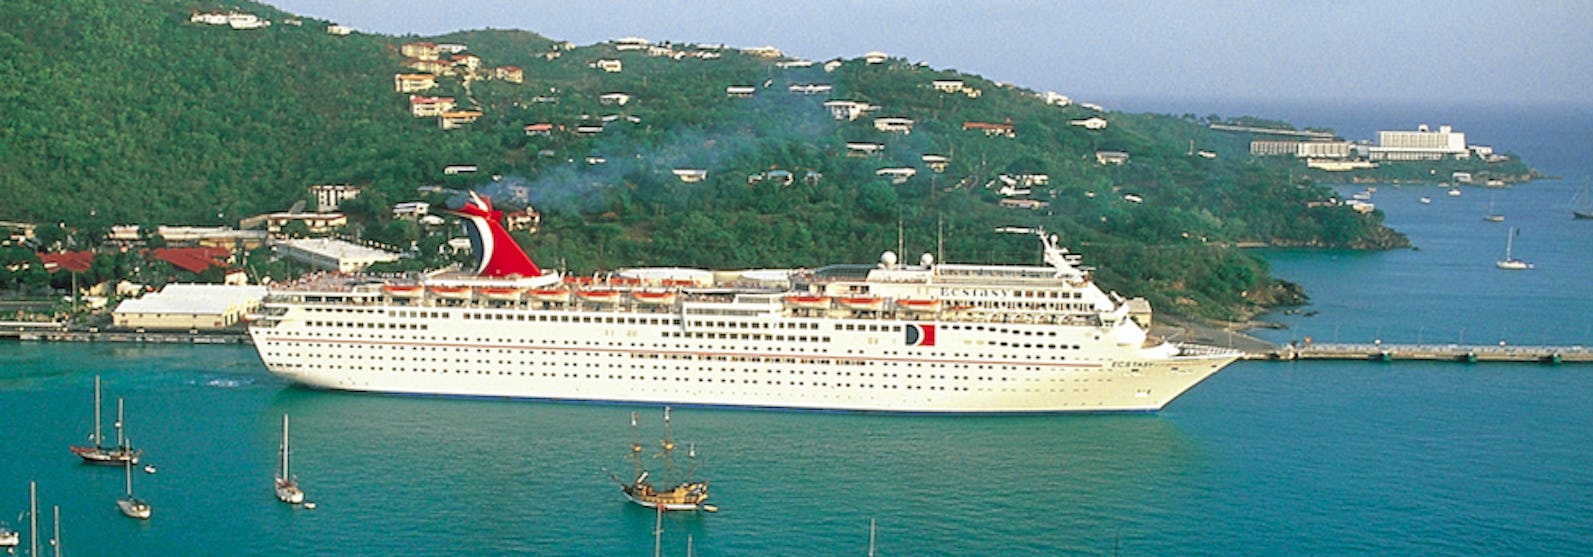 Fartyget Carnival Ecstasy ligger vid en hamn med en grön kulle i bakgrunden och mindre segelbåtar i framkant.